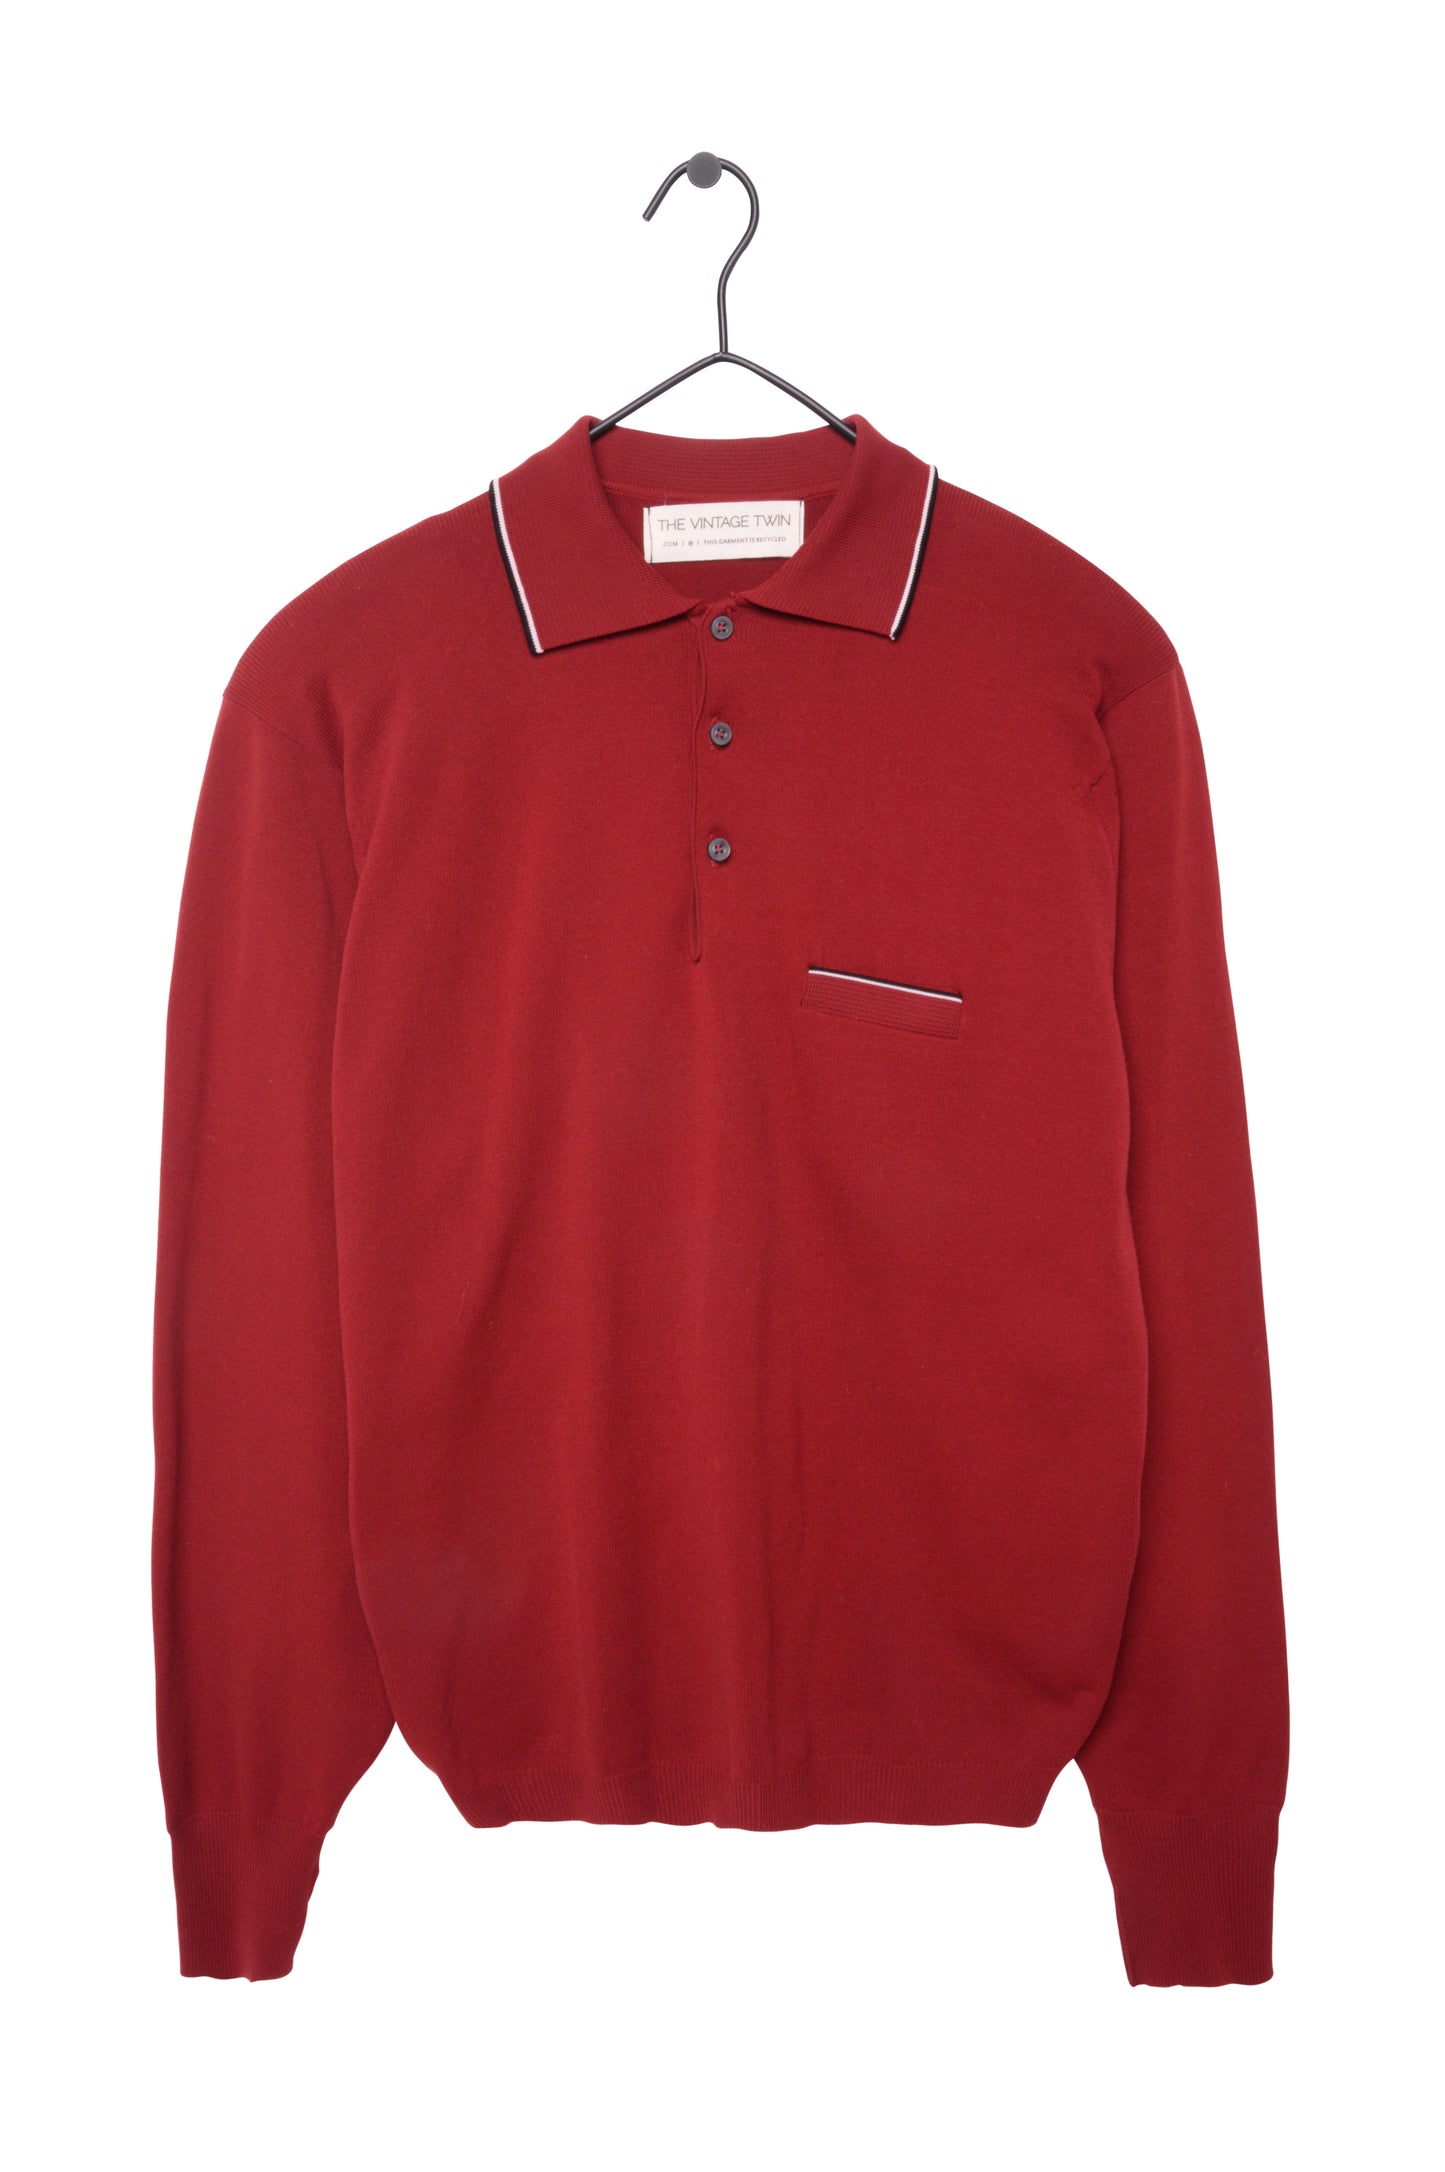 Banlon Polo Sweater USA